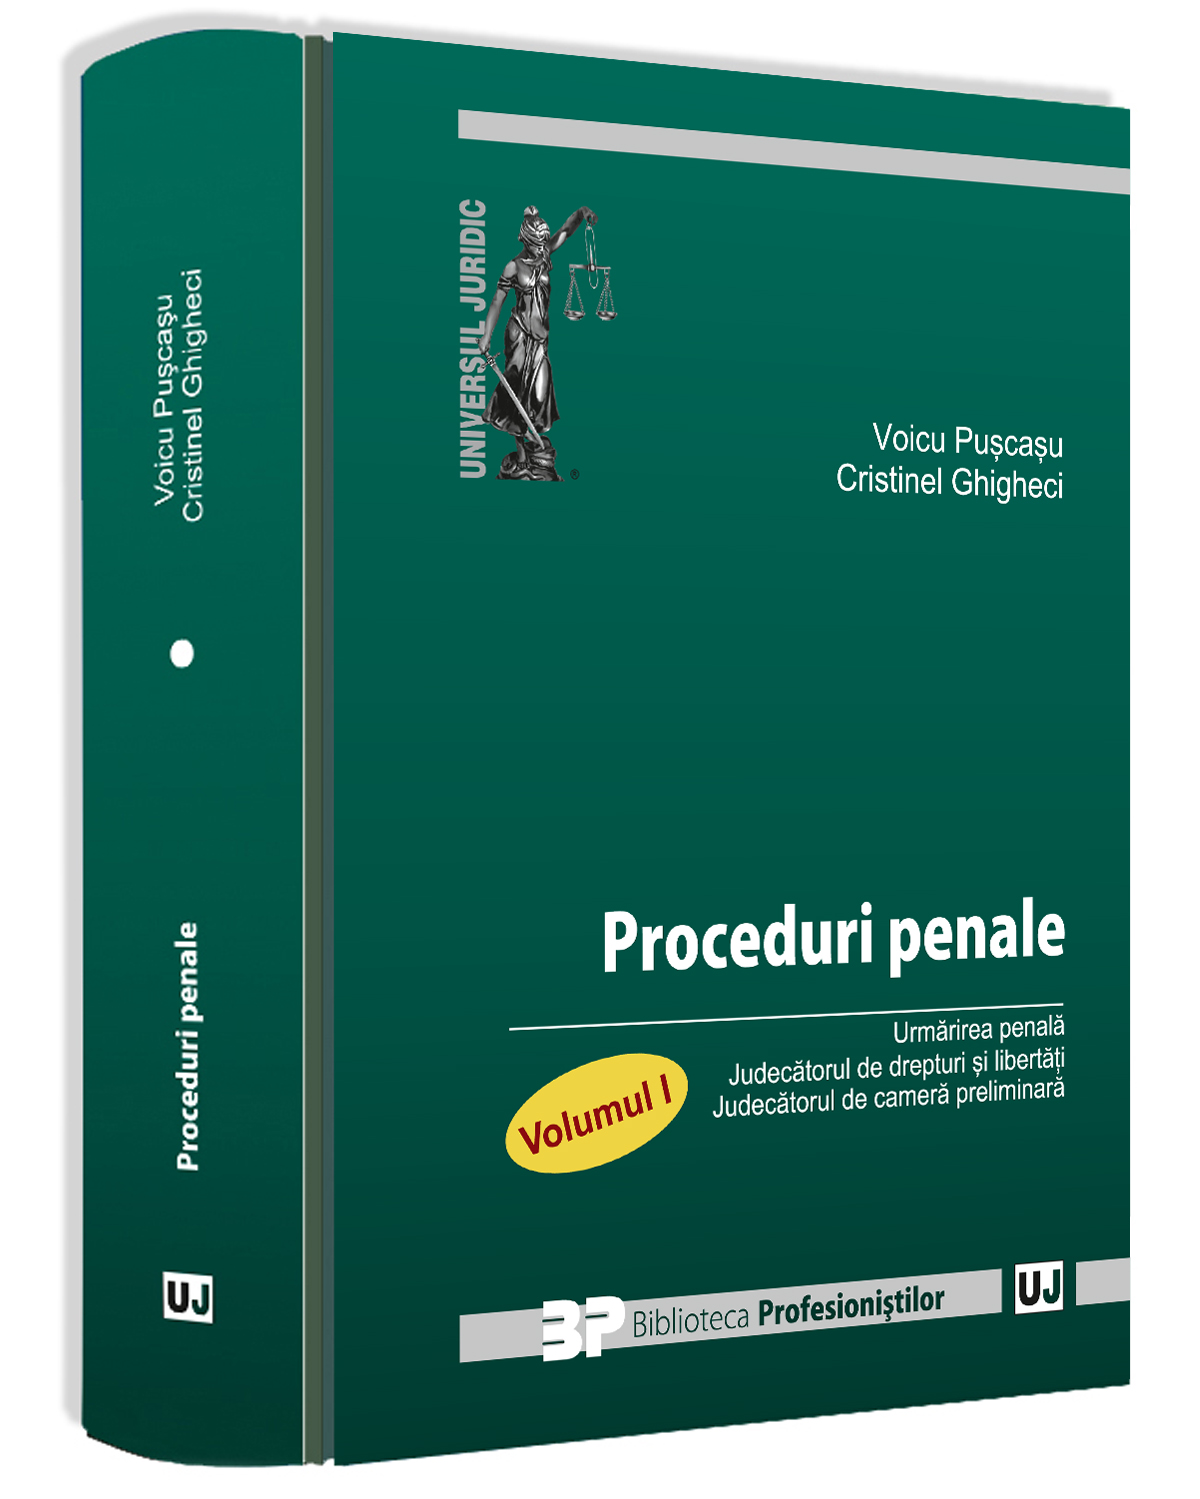 Proceduri penale. Volumul I | Voicu Puscasu, Cristinel Ghigheci